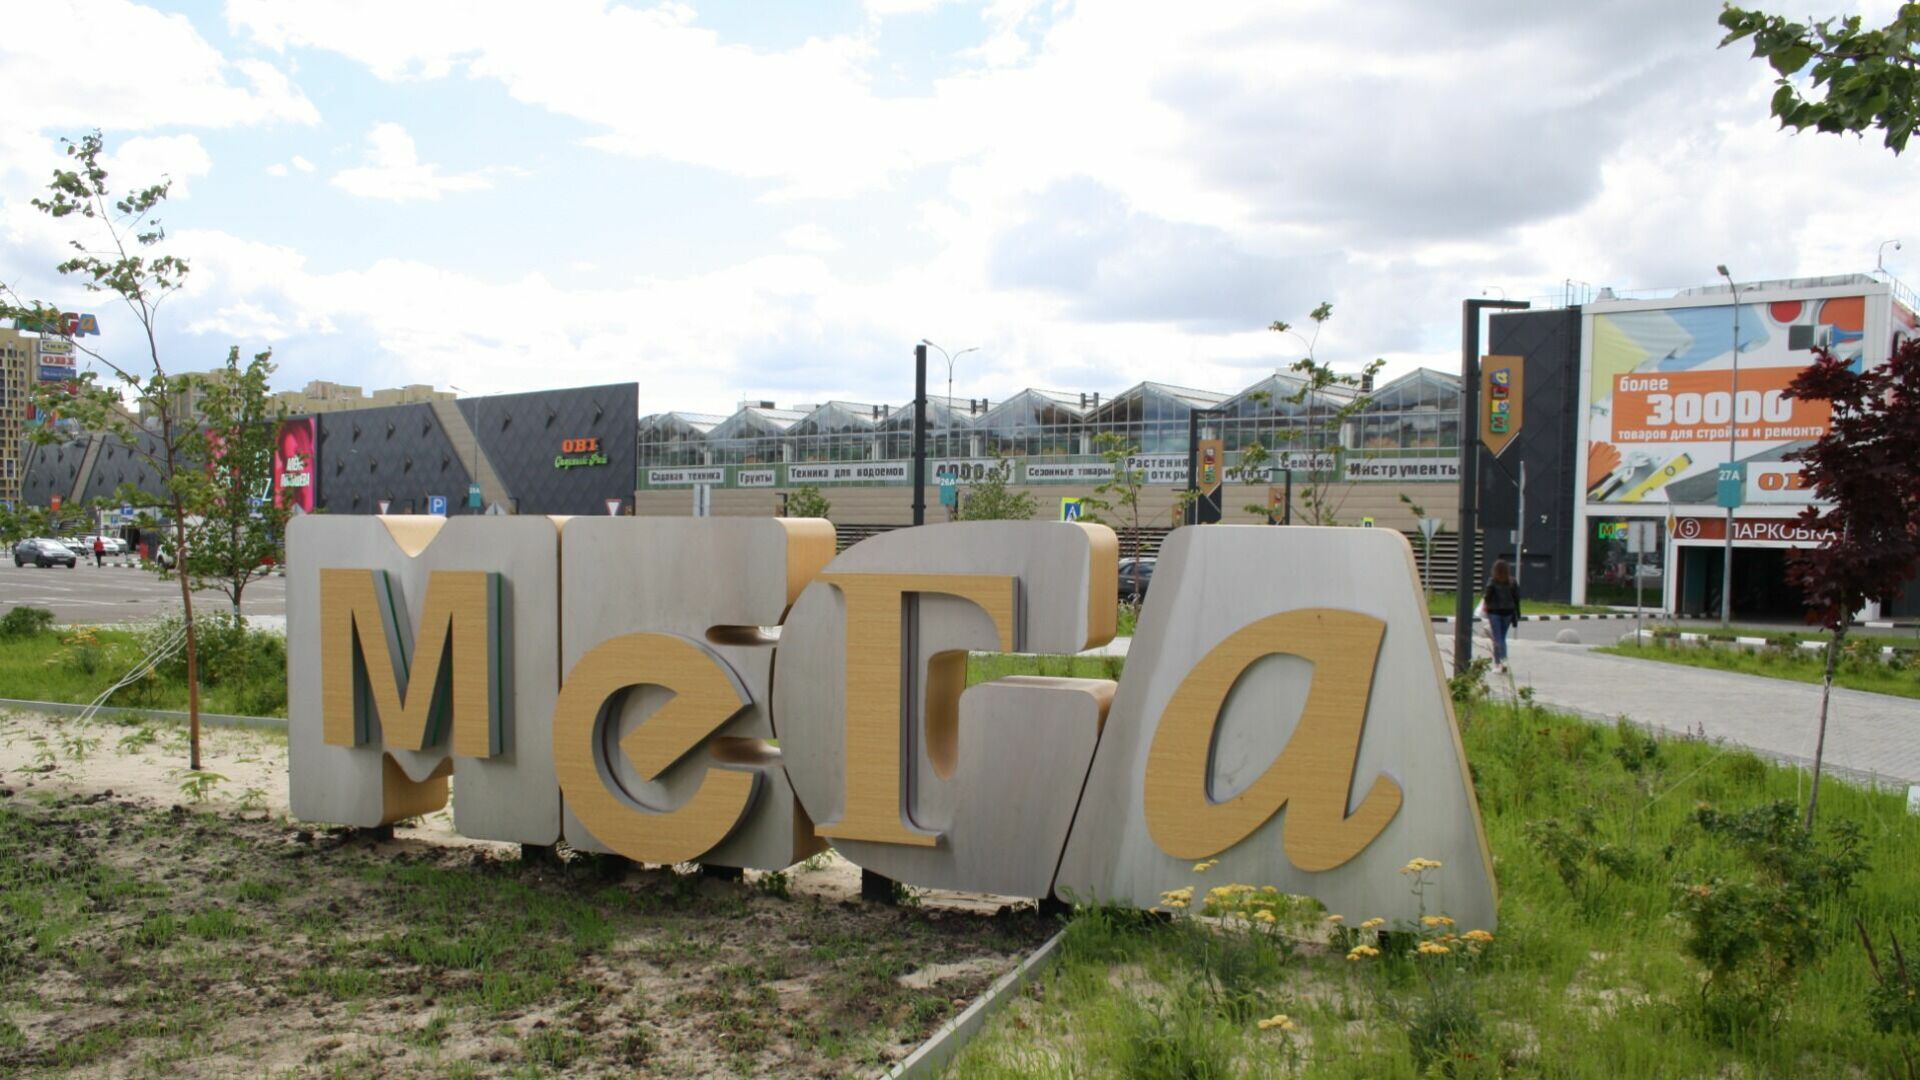 Переговоры о появлении сменщика IKEA в казанской «Меге» не ведутся